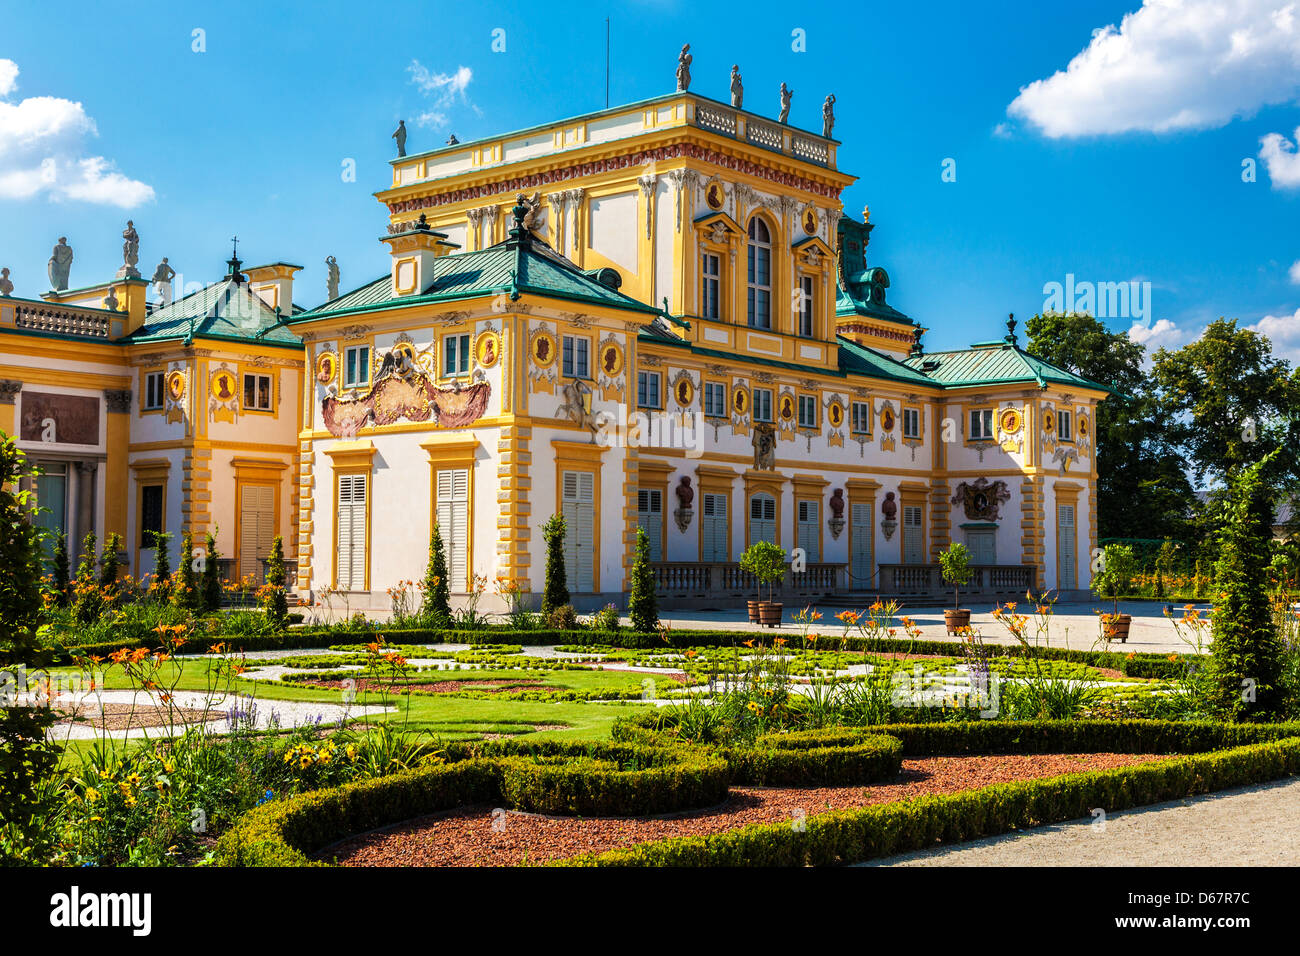 Eine Ecke des 17. Jahrhunderts Wilanów königlichen Palast und Gärten in Warschau, Polen. Stockfoto